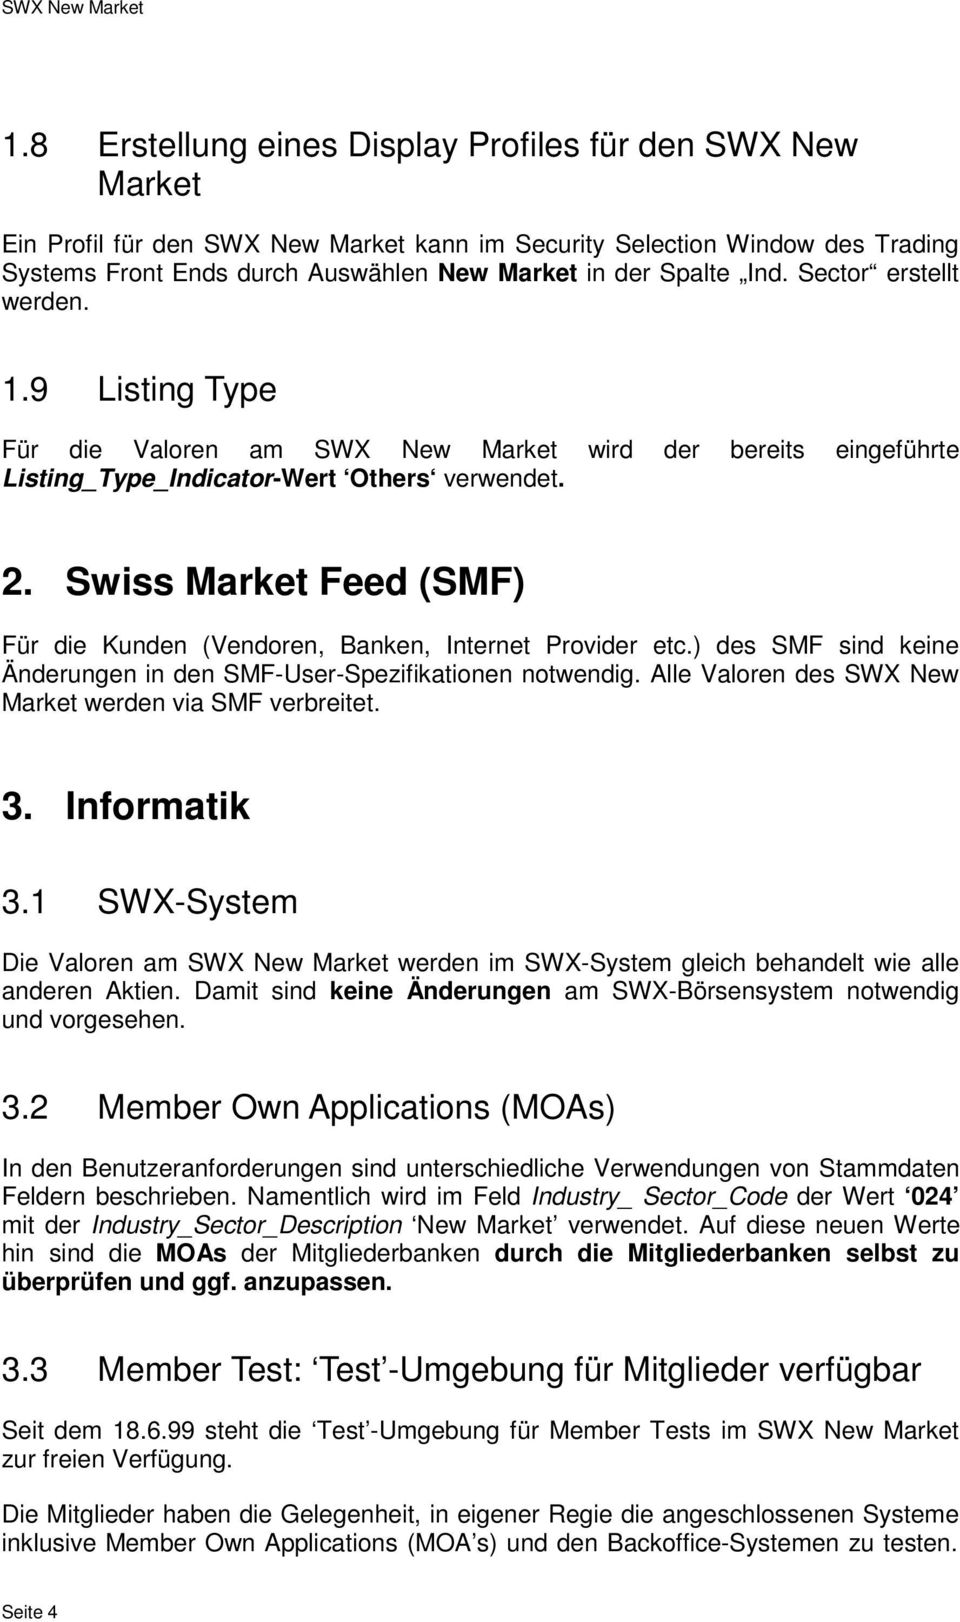 Swiss Market Feed (SMF) Für die Kunden (Vendoren, Banken, Internet Provider etc.) des SMF sind keine Änderungen in den SMF-User-Spezifikationen notwendig.